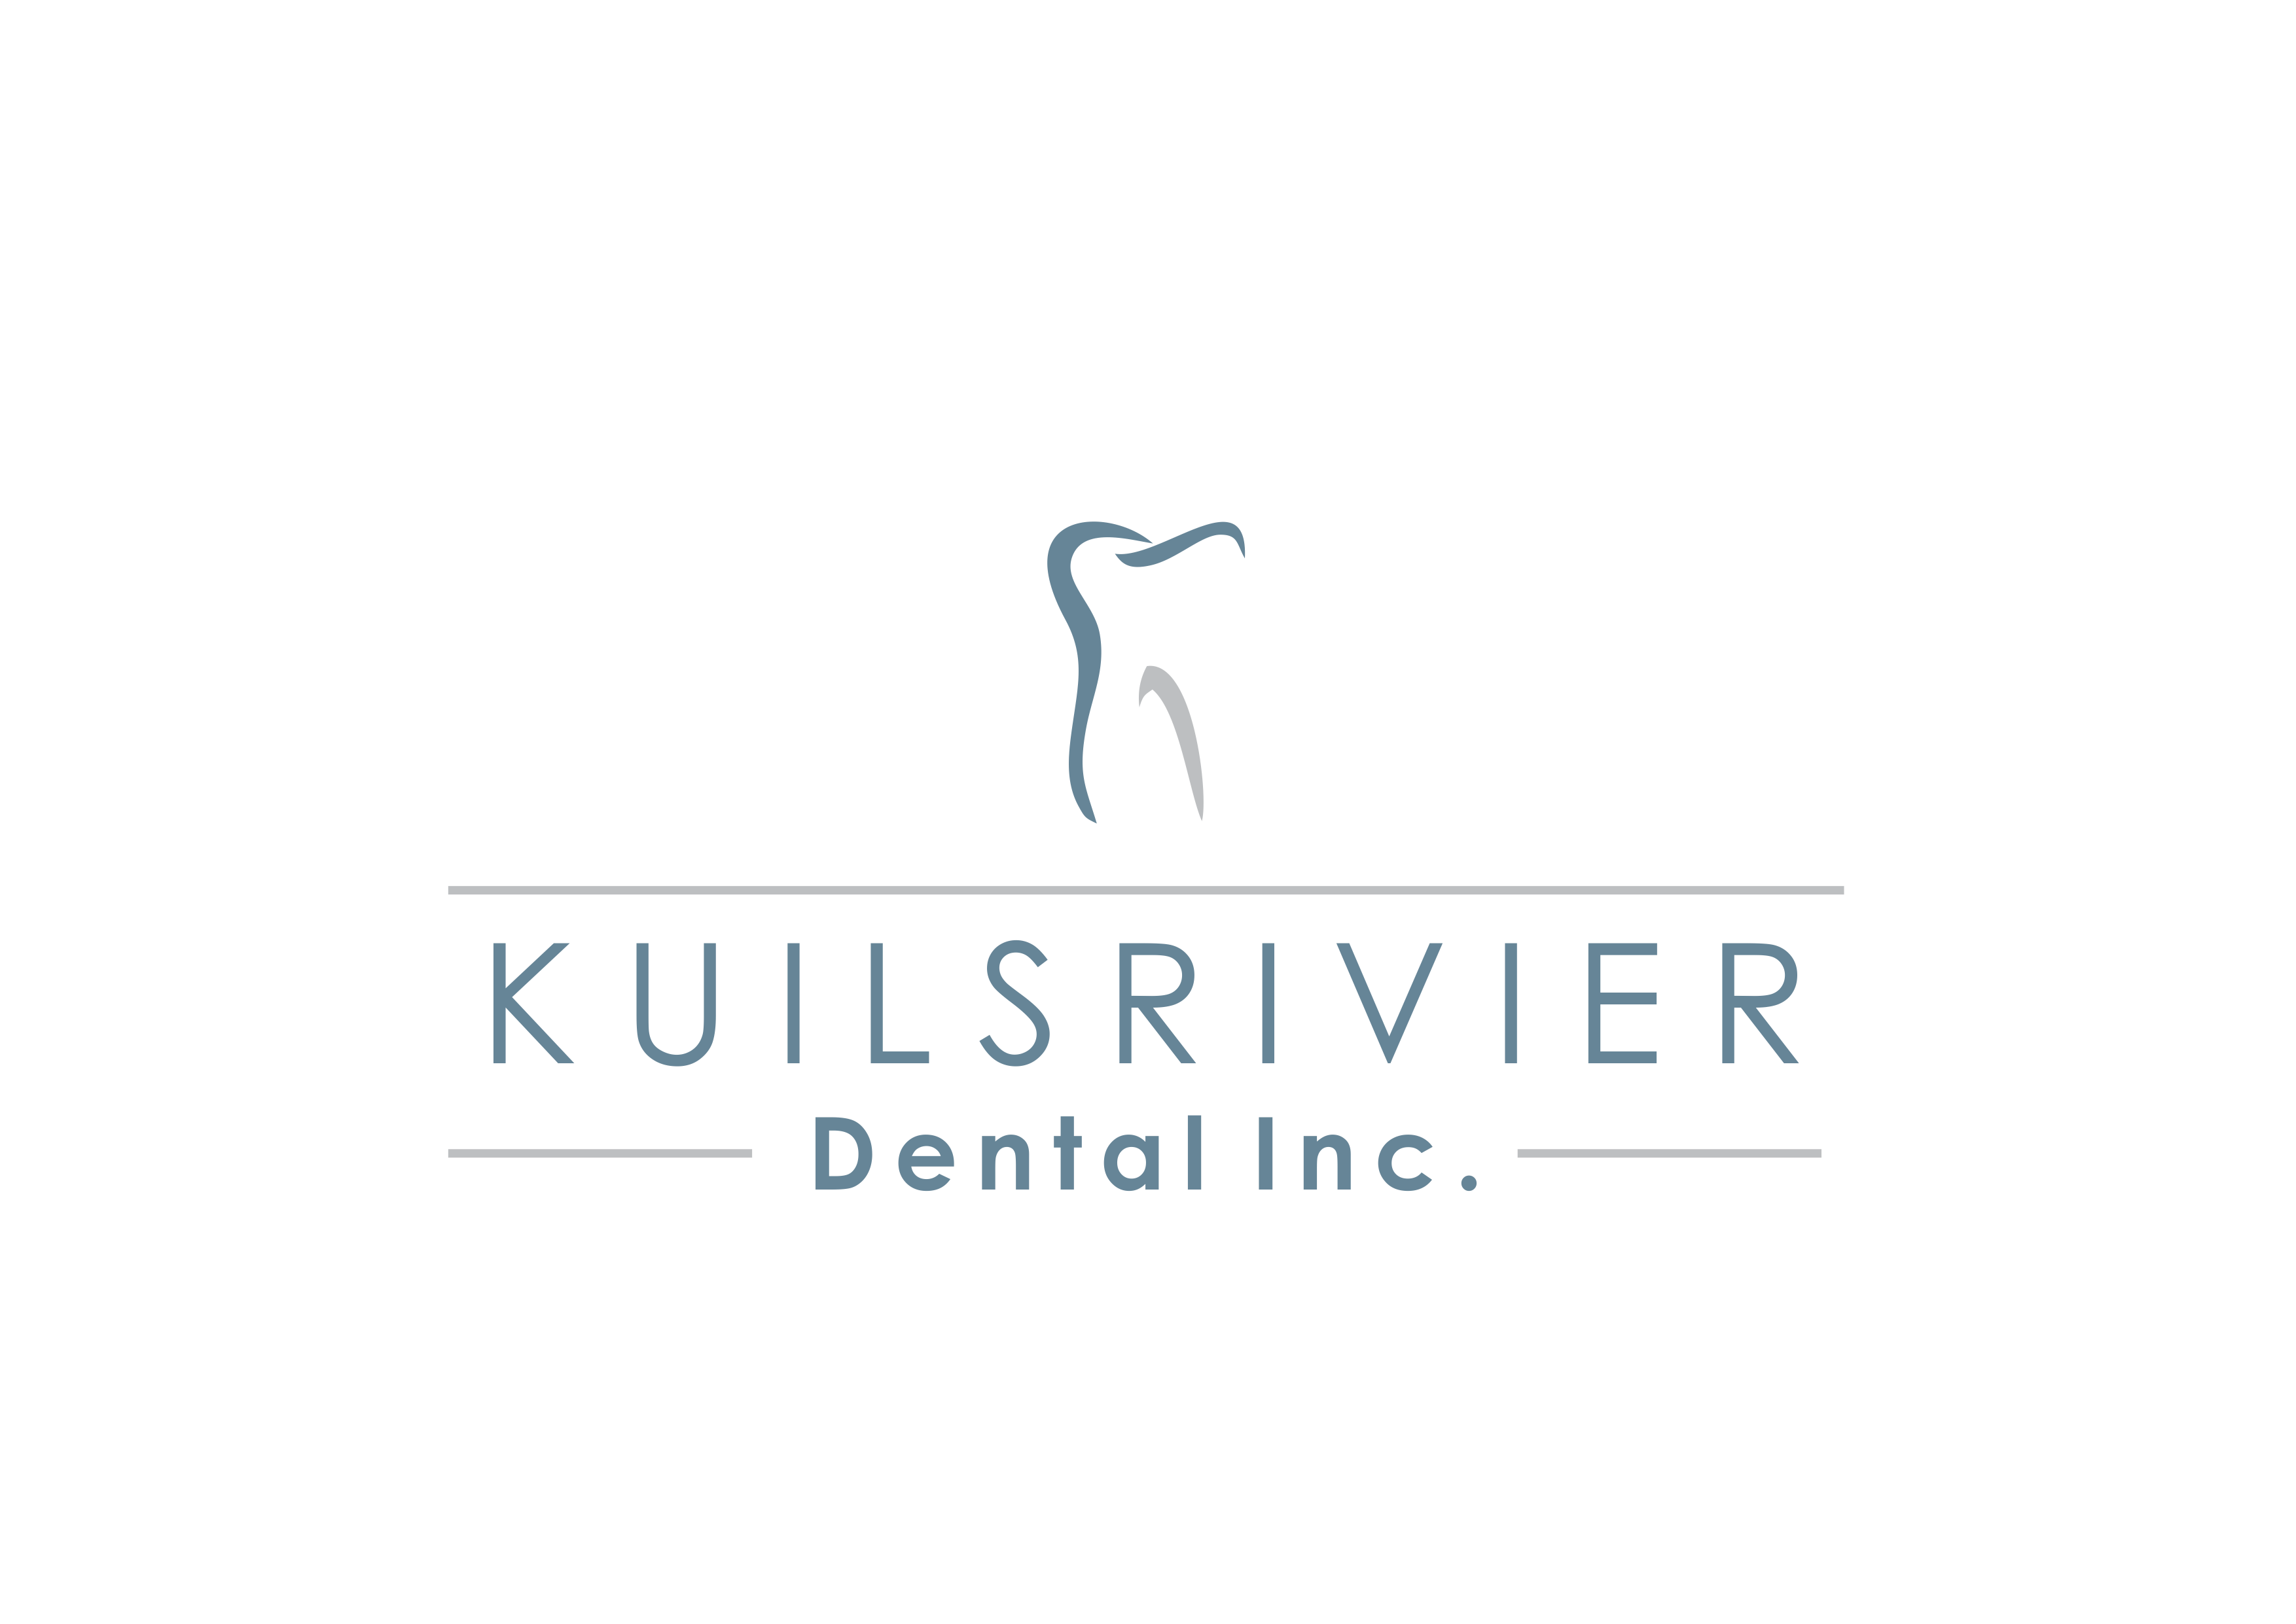 Dentist | Kuilsrivier | Kuilsrivier Dental Inc.